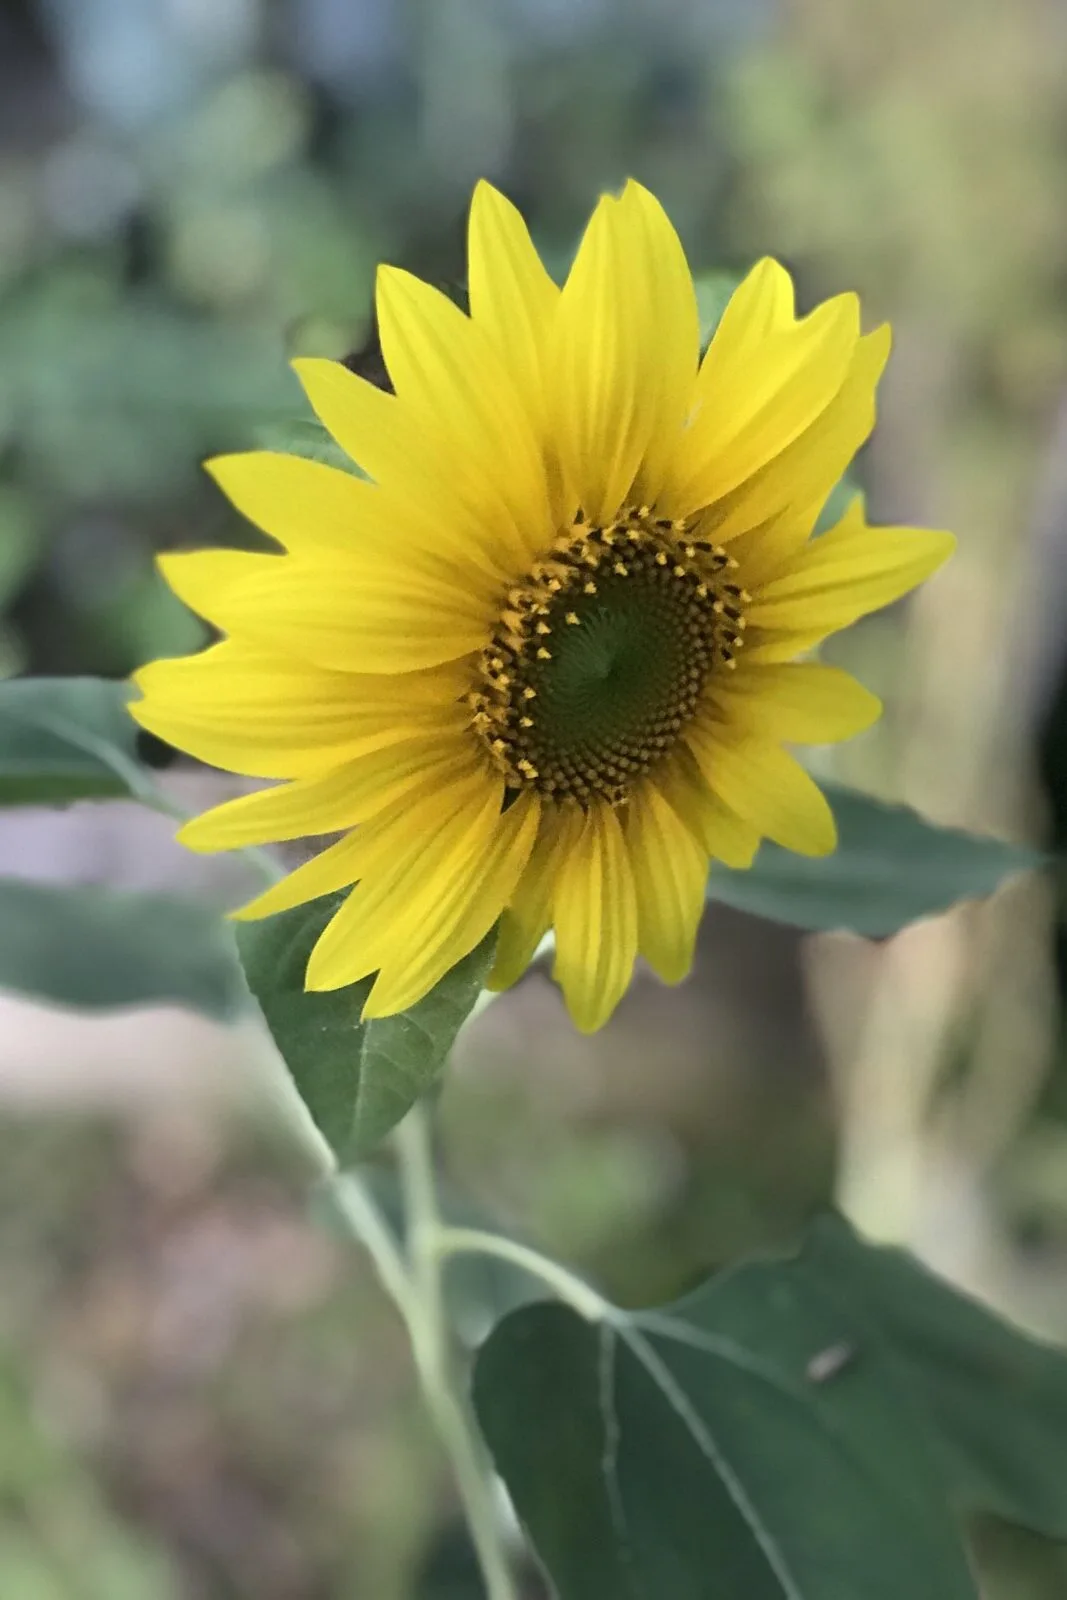 Sunflower-pepper-plants-article-edited.jpg.webp